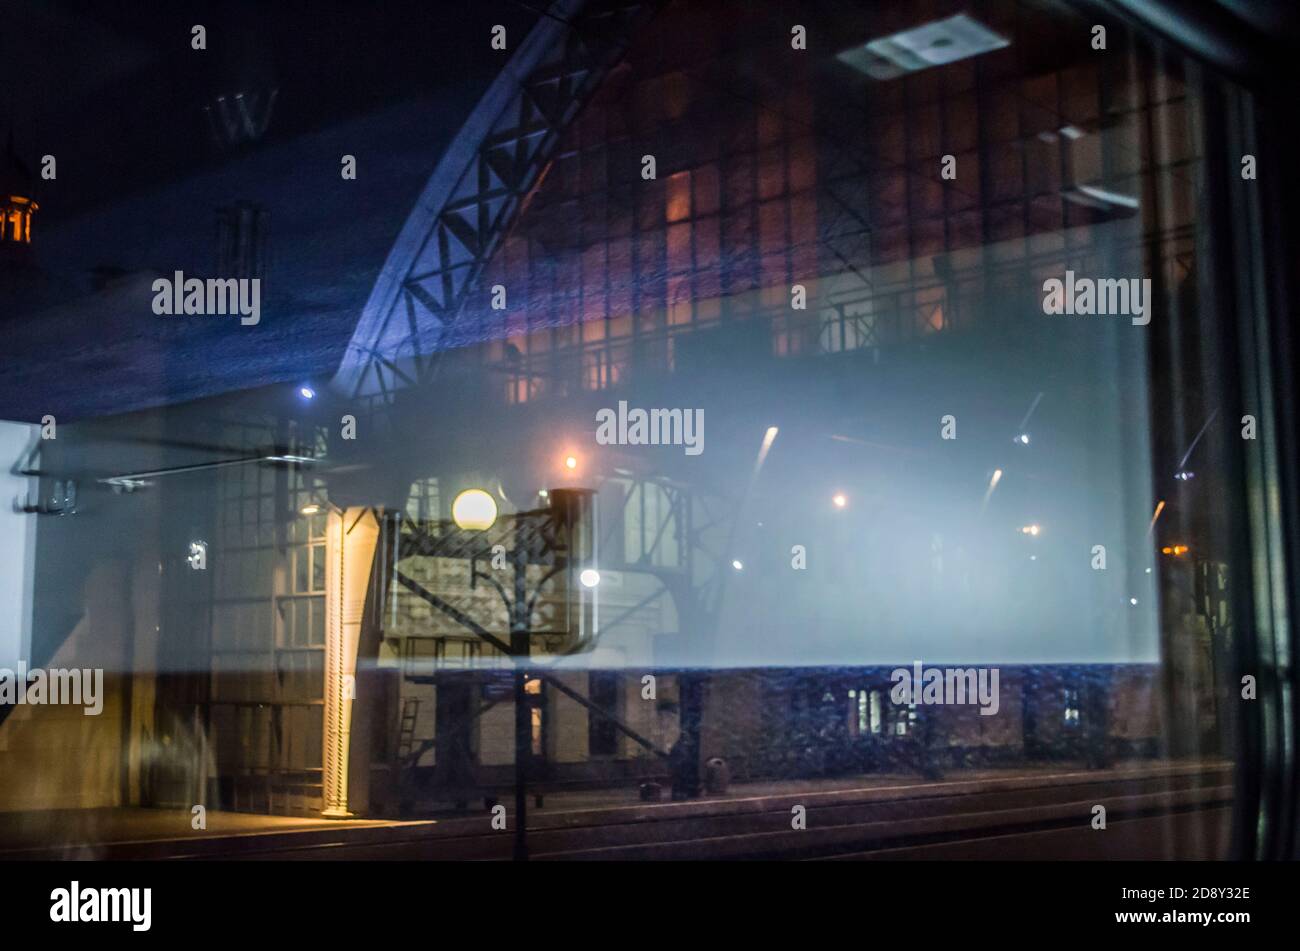 Station de nuit à Lviv. Lanternes sur la plate-forme. Photo de nuit. Banque D'Images